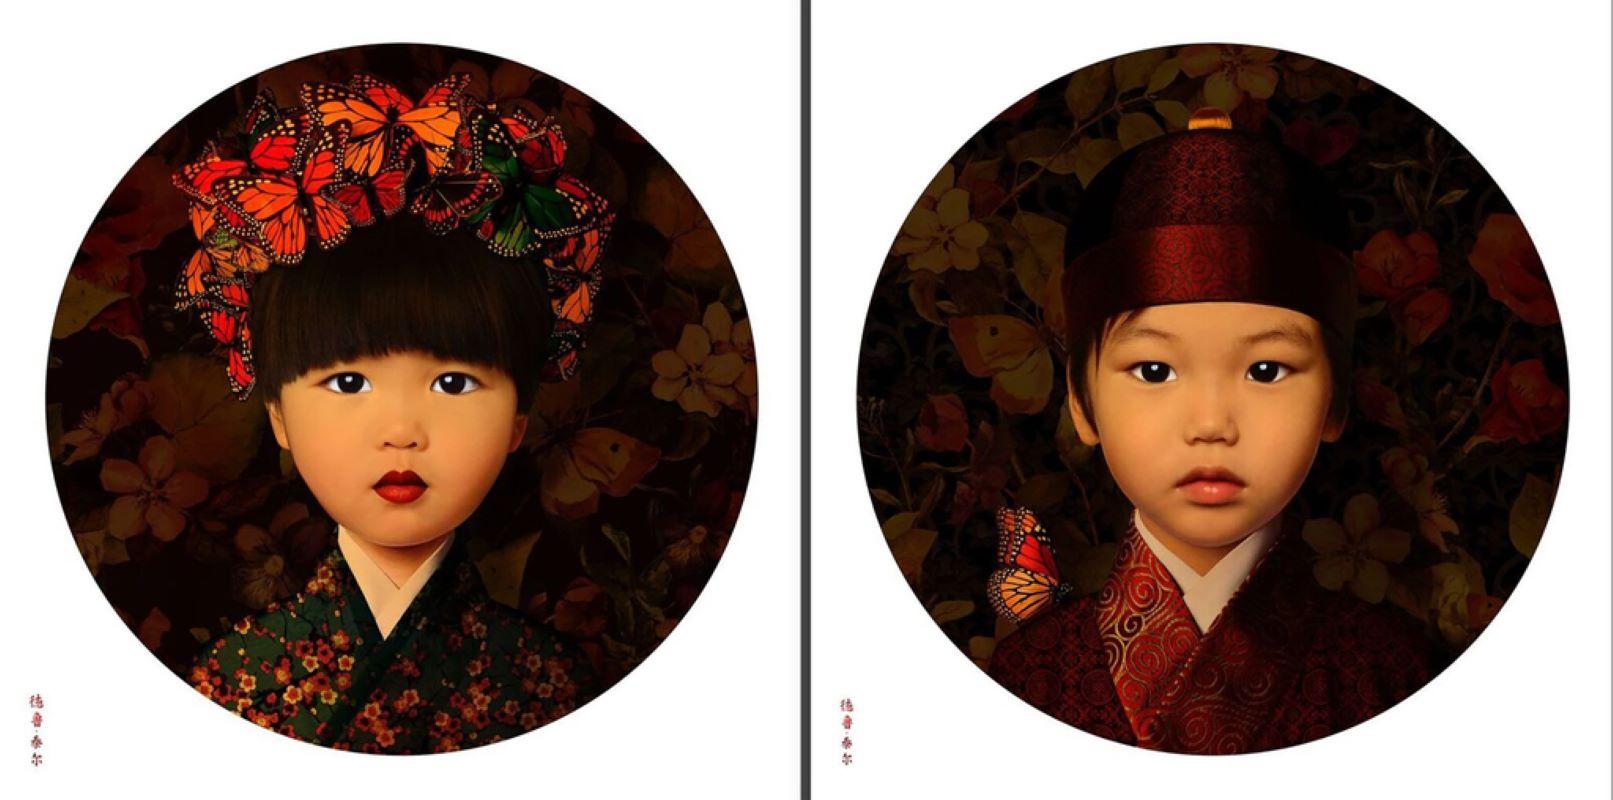 Drew Tal Color Photograph - Monarchy